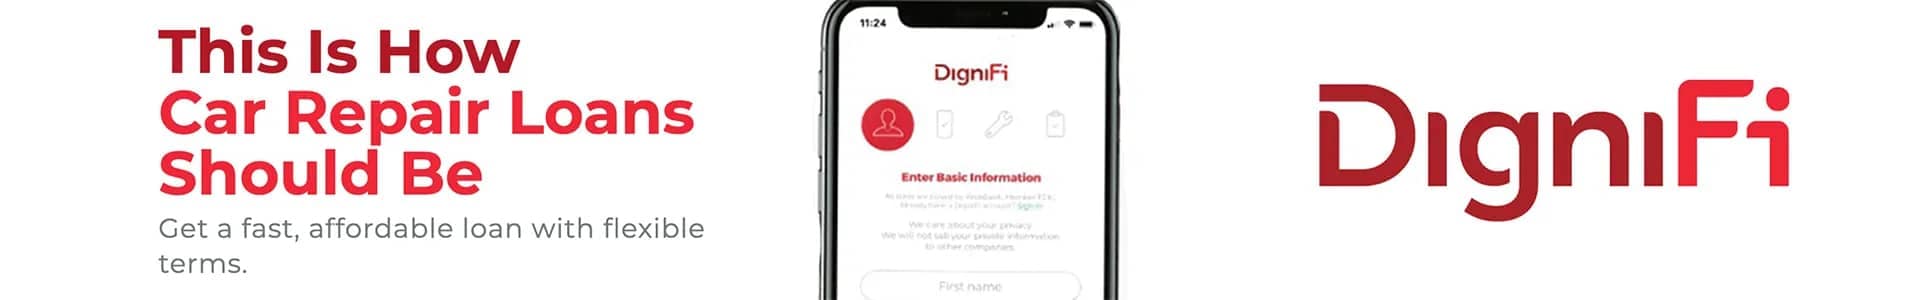 DigniFi banner